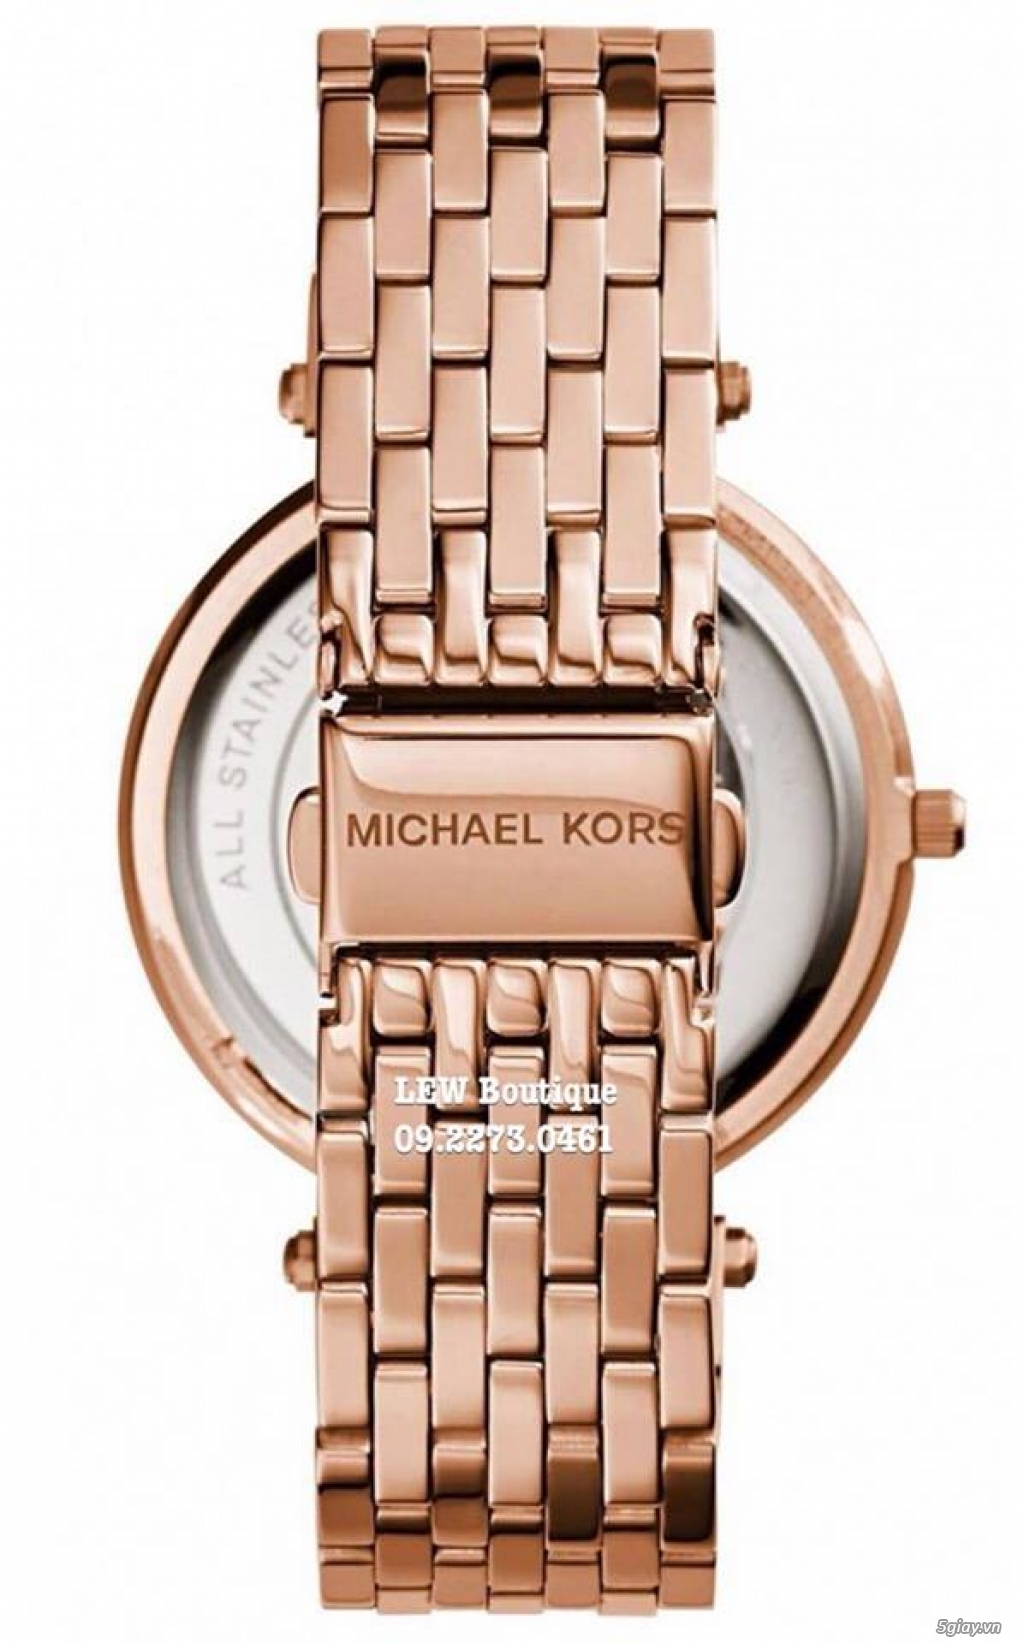 LEW - Chuyên Đồng hồ Michael Kors chính hãng và các ĐH thương hiệu - 22